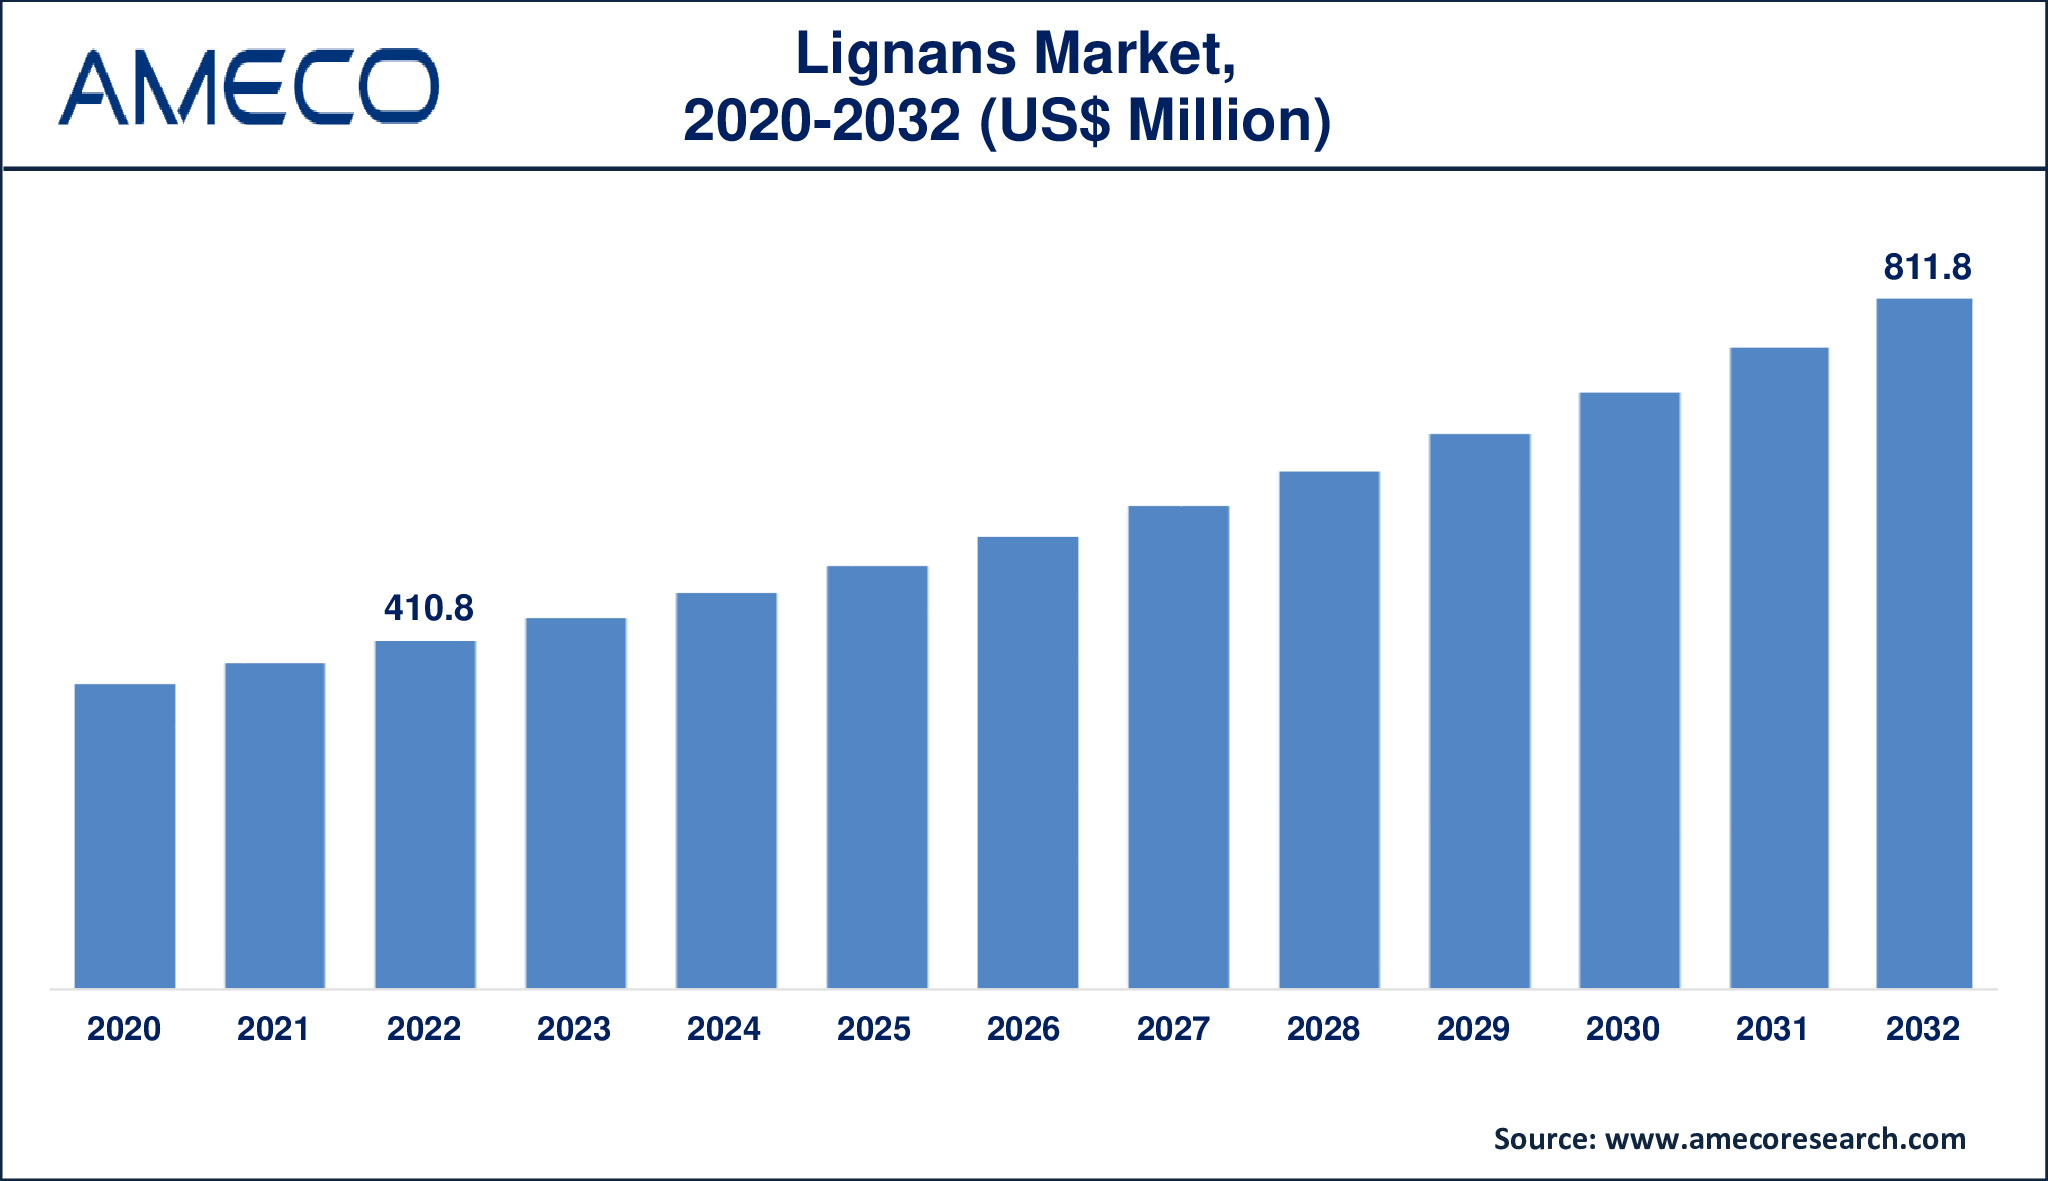 Lignans Market Dynamics